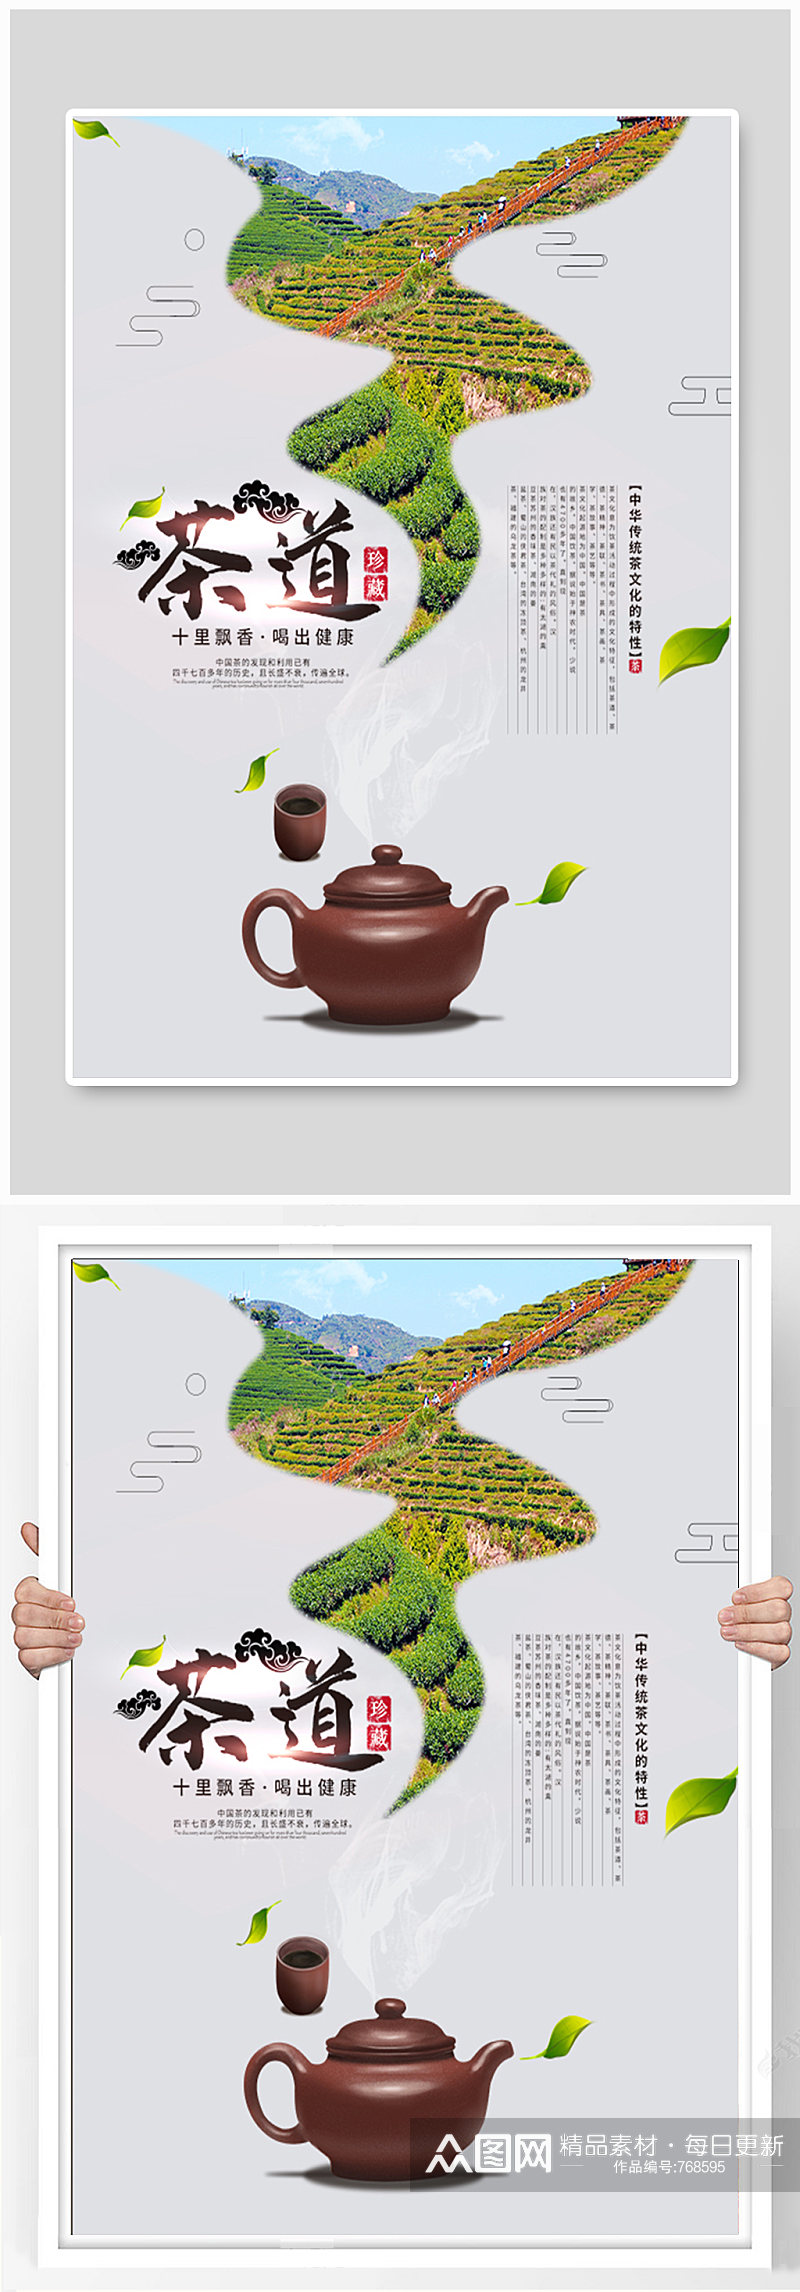 茶文化茶道简约留白创意海报素材